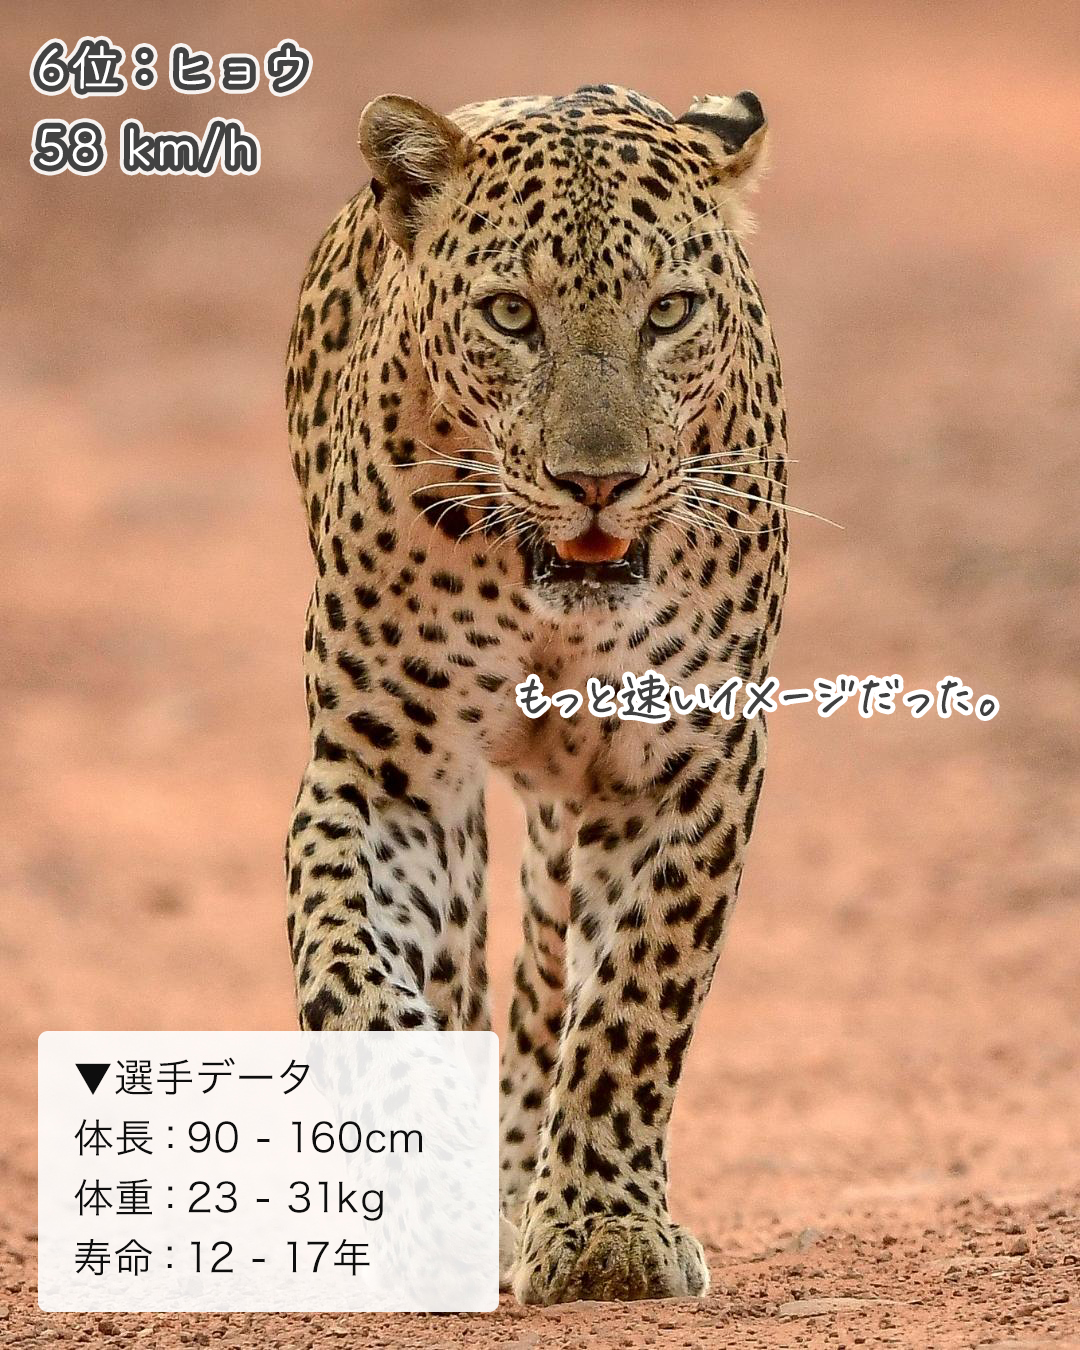 ネコ科の走る速さランキング イエネコは何位 ねこぞー Yahoo Japan クリエイターズプログラム